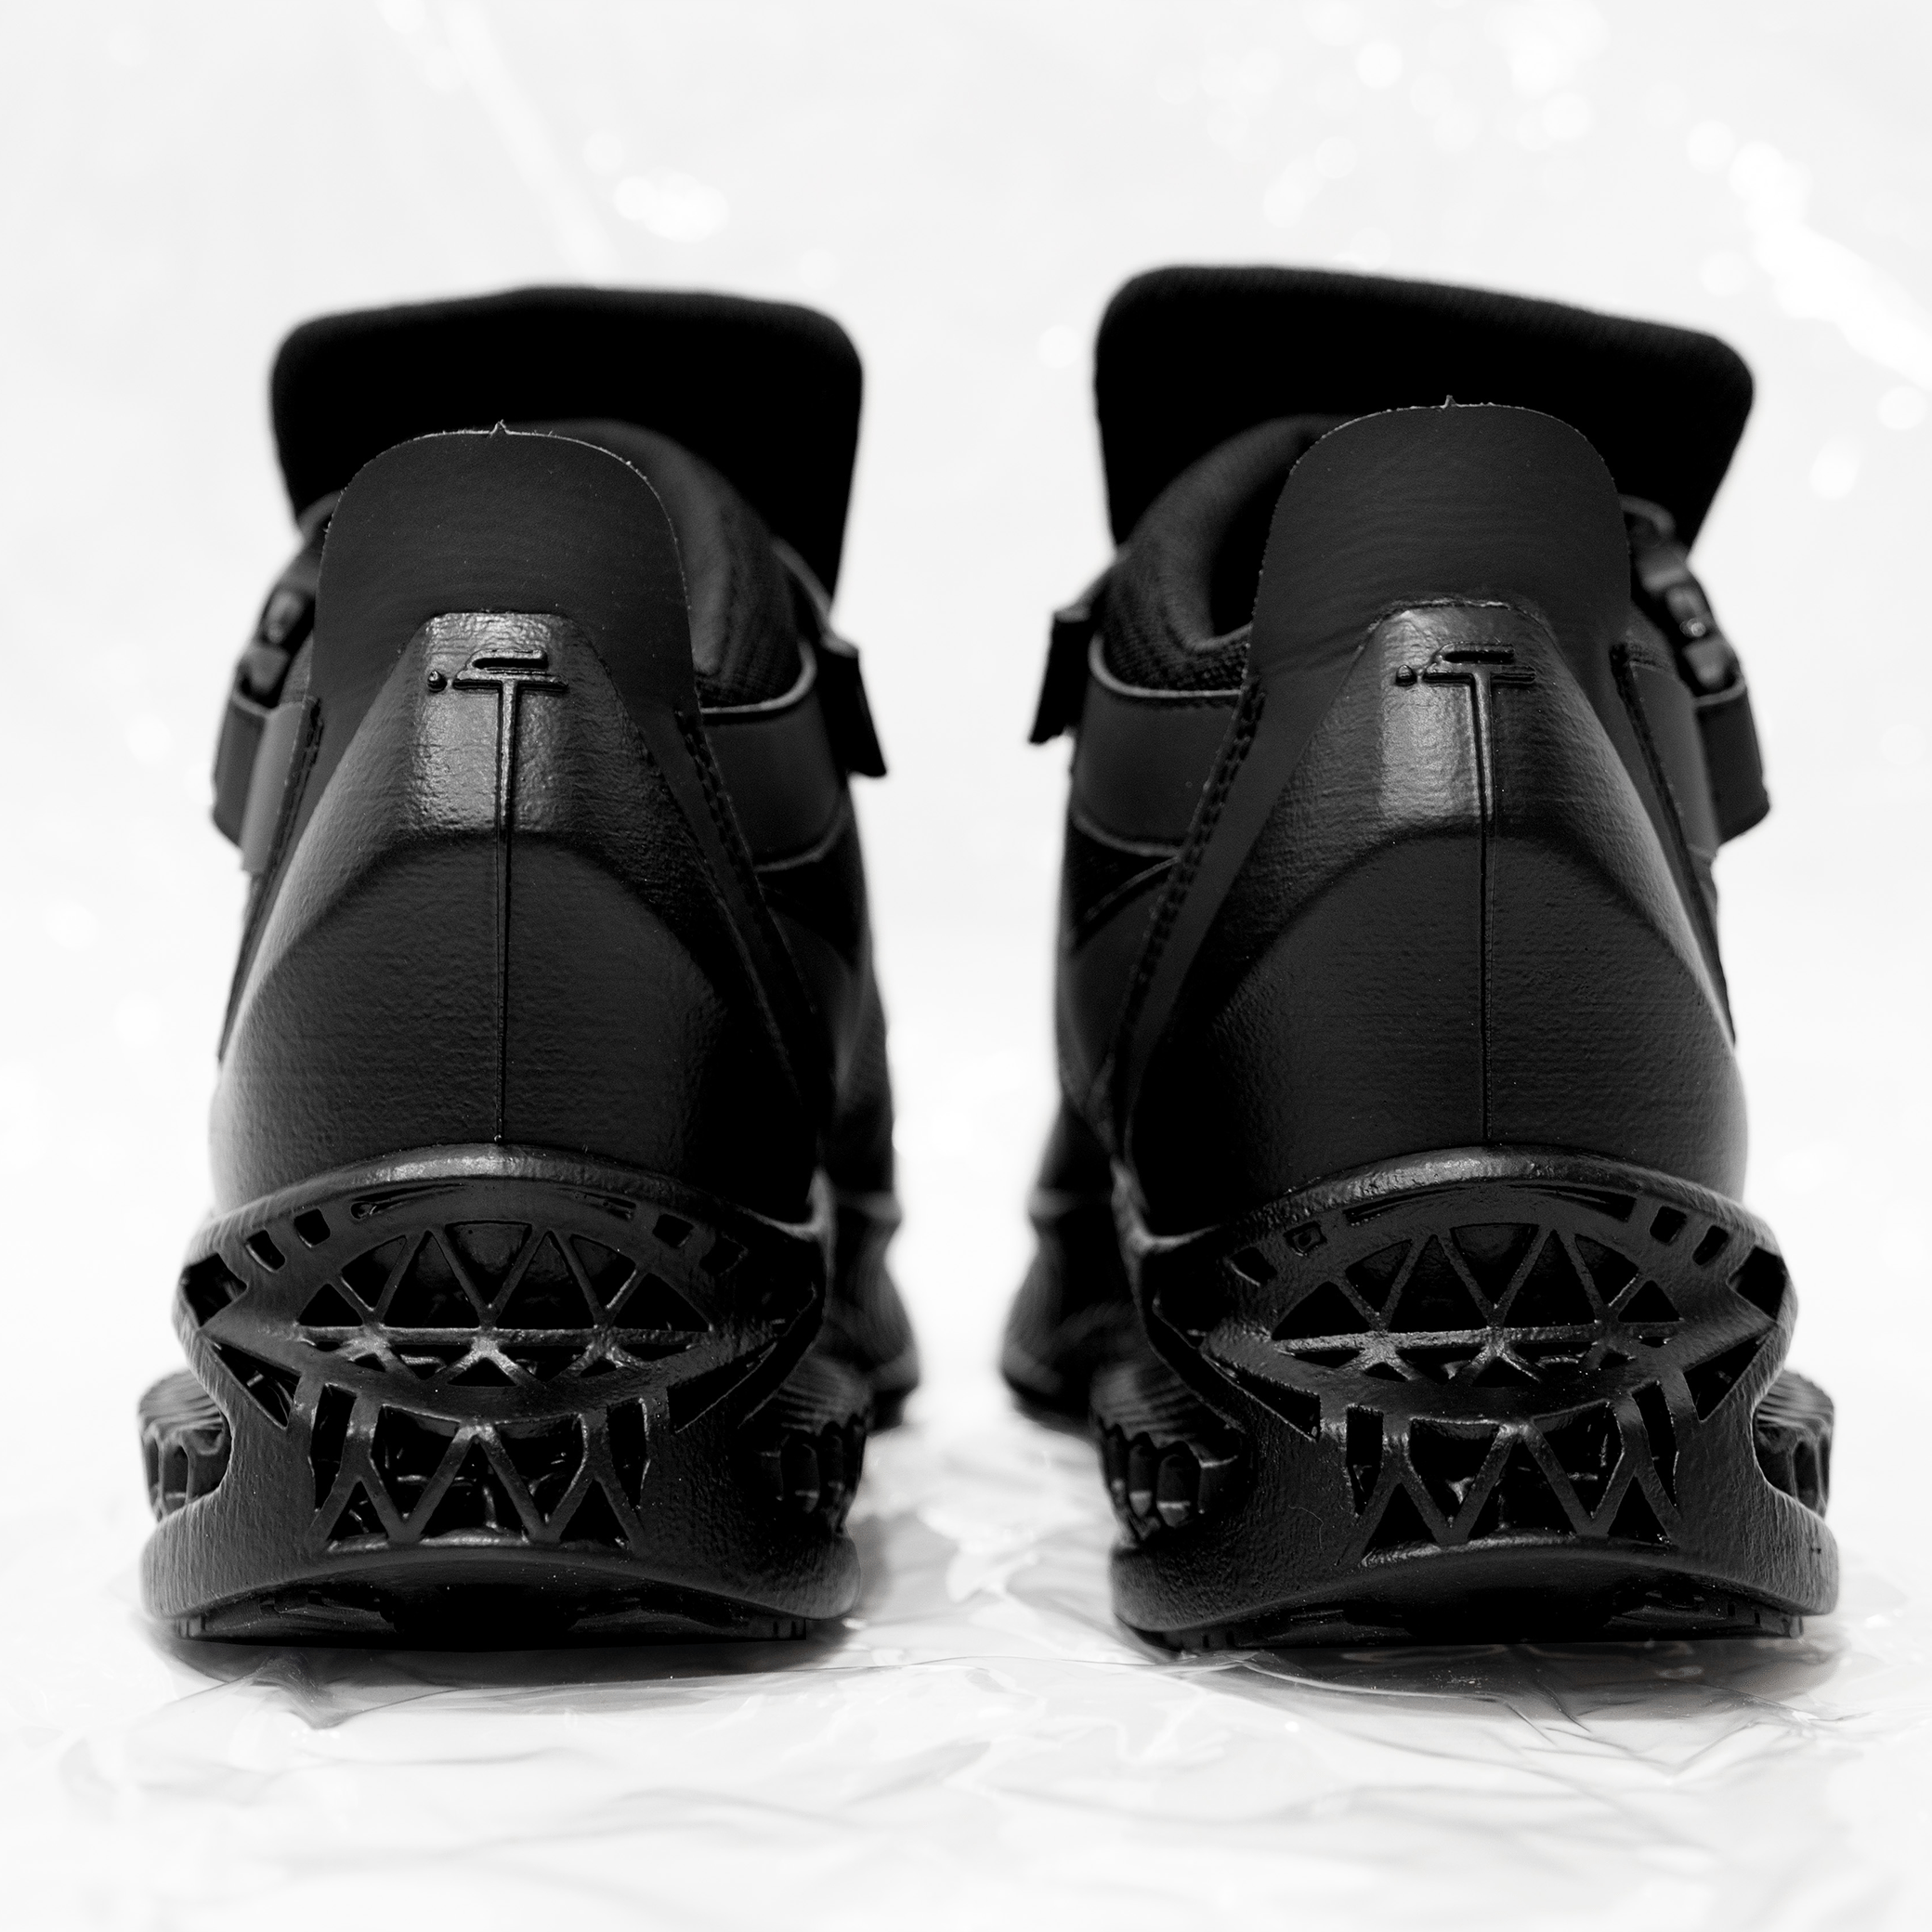 3D Printed Deer Hoof Sneakers - Avant Gardist